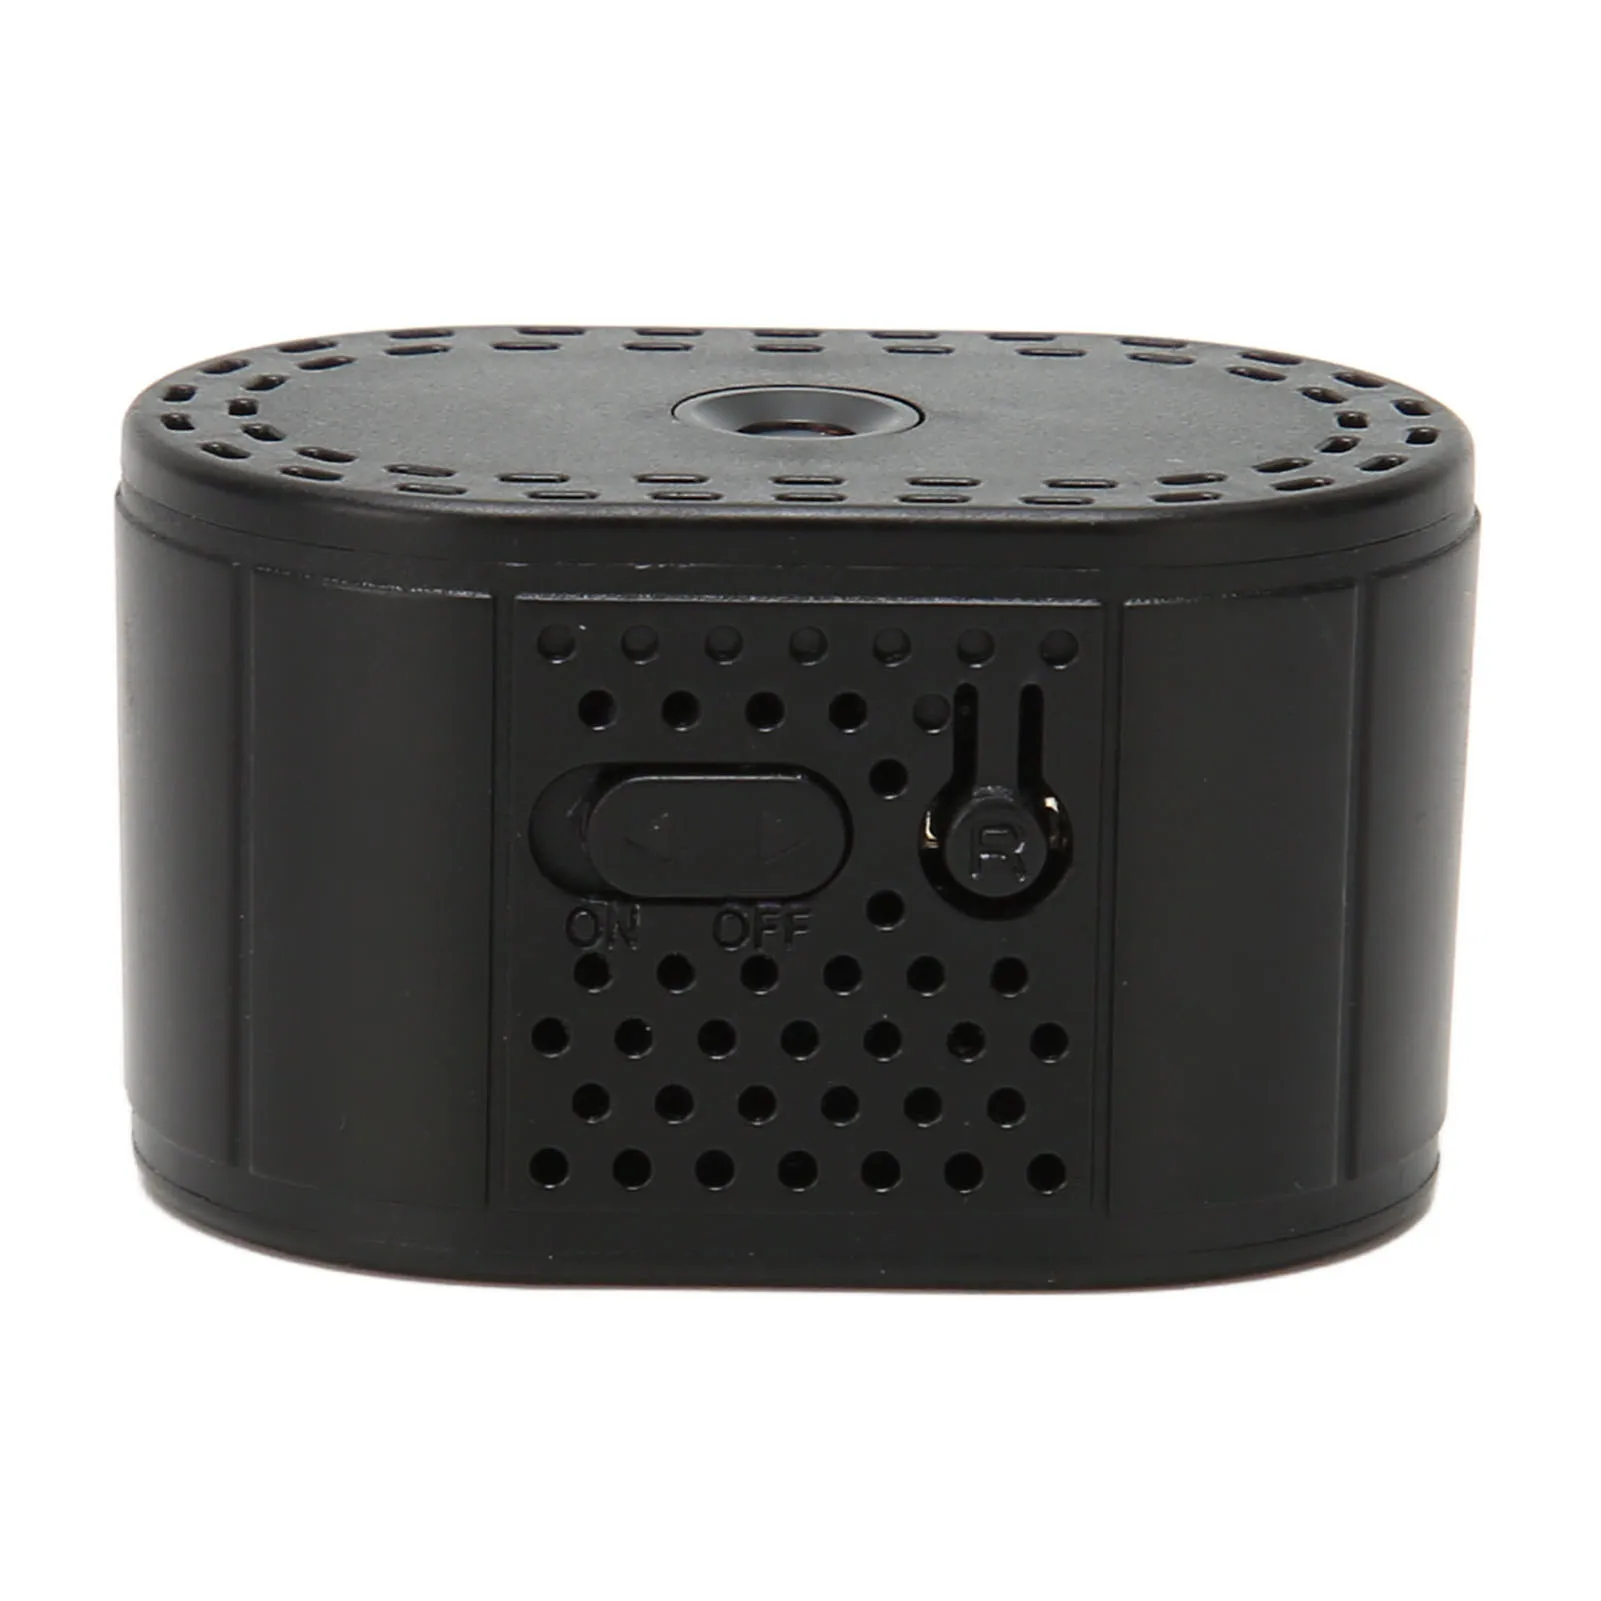 Домашняя камера безопасности ночного видения Обнаружение движения Циклическая запись Усовершенствованный чип, Поворотная подставка, беспроводная мини-камера WiFi